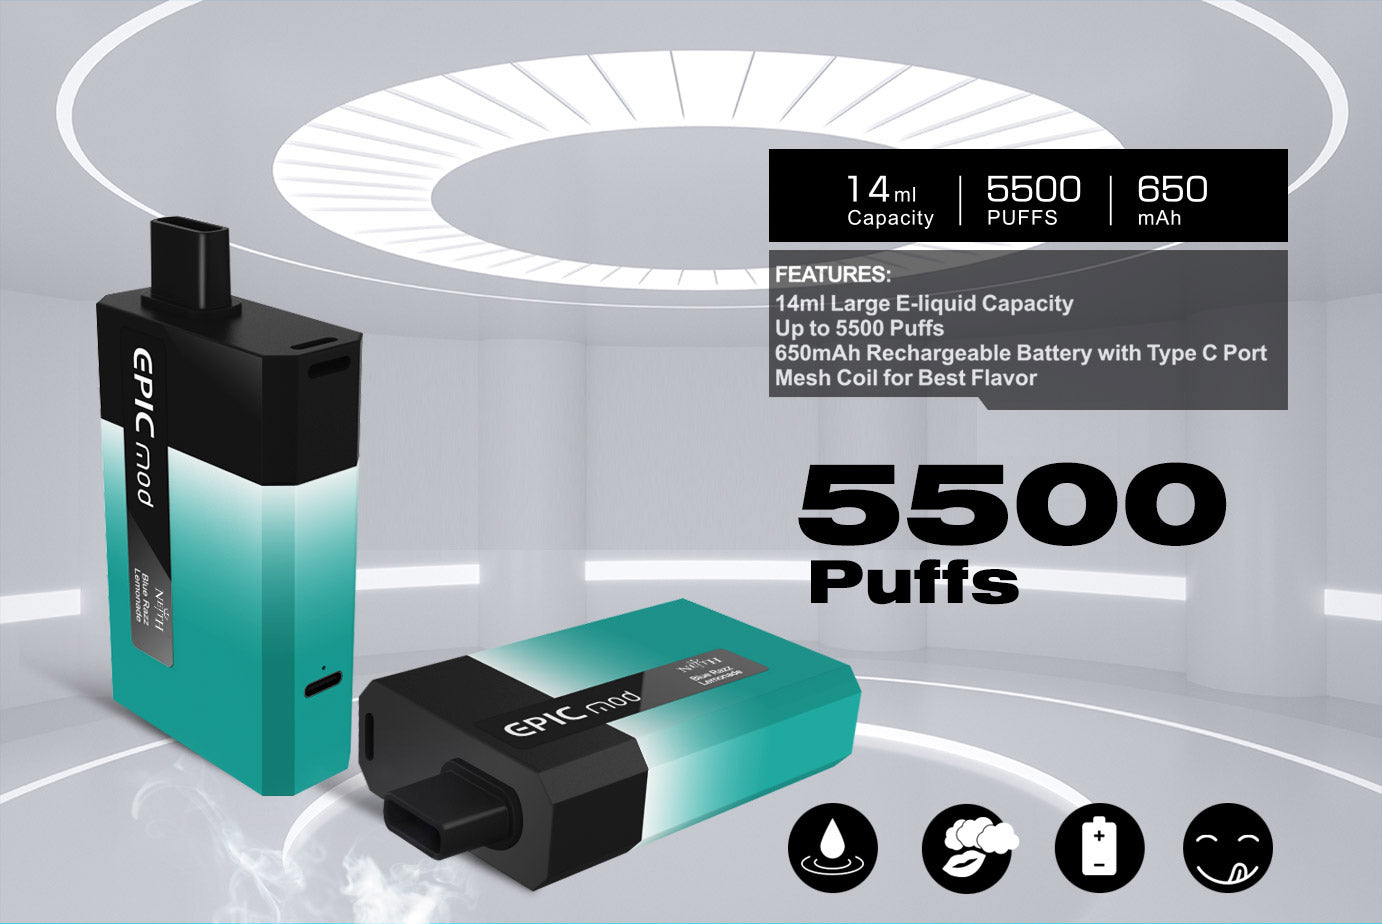 NEITH EPICMOD 5500 Wiederaufladbares Einweg E-Zigarette Kit 650mAh (50mg)